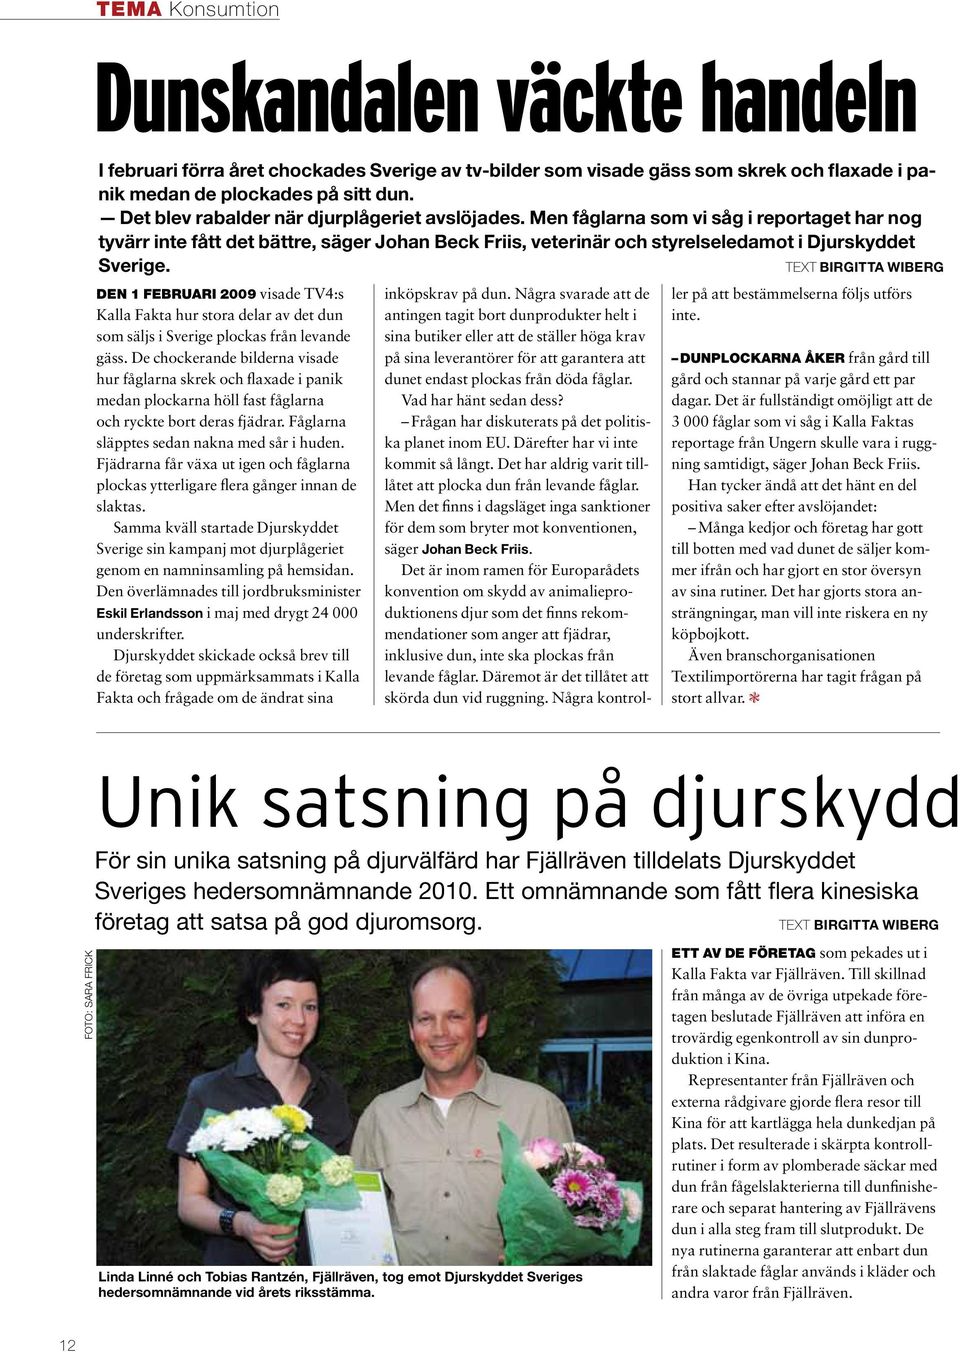 Text birgitta wiberg Den 1 februari 2009 visade TV4:s Kalla Fakta hur stora delar av det dun som säljs i Sverige plockas från levande gäss.